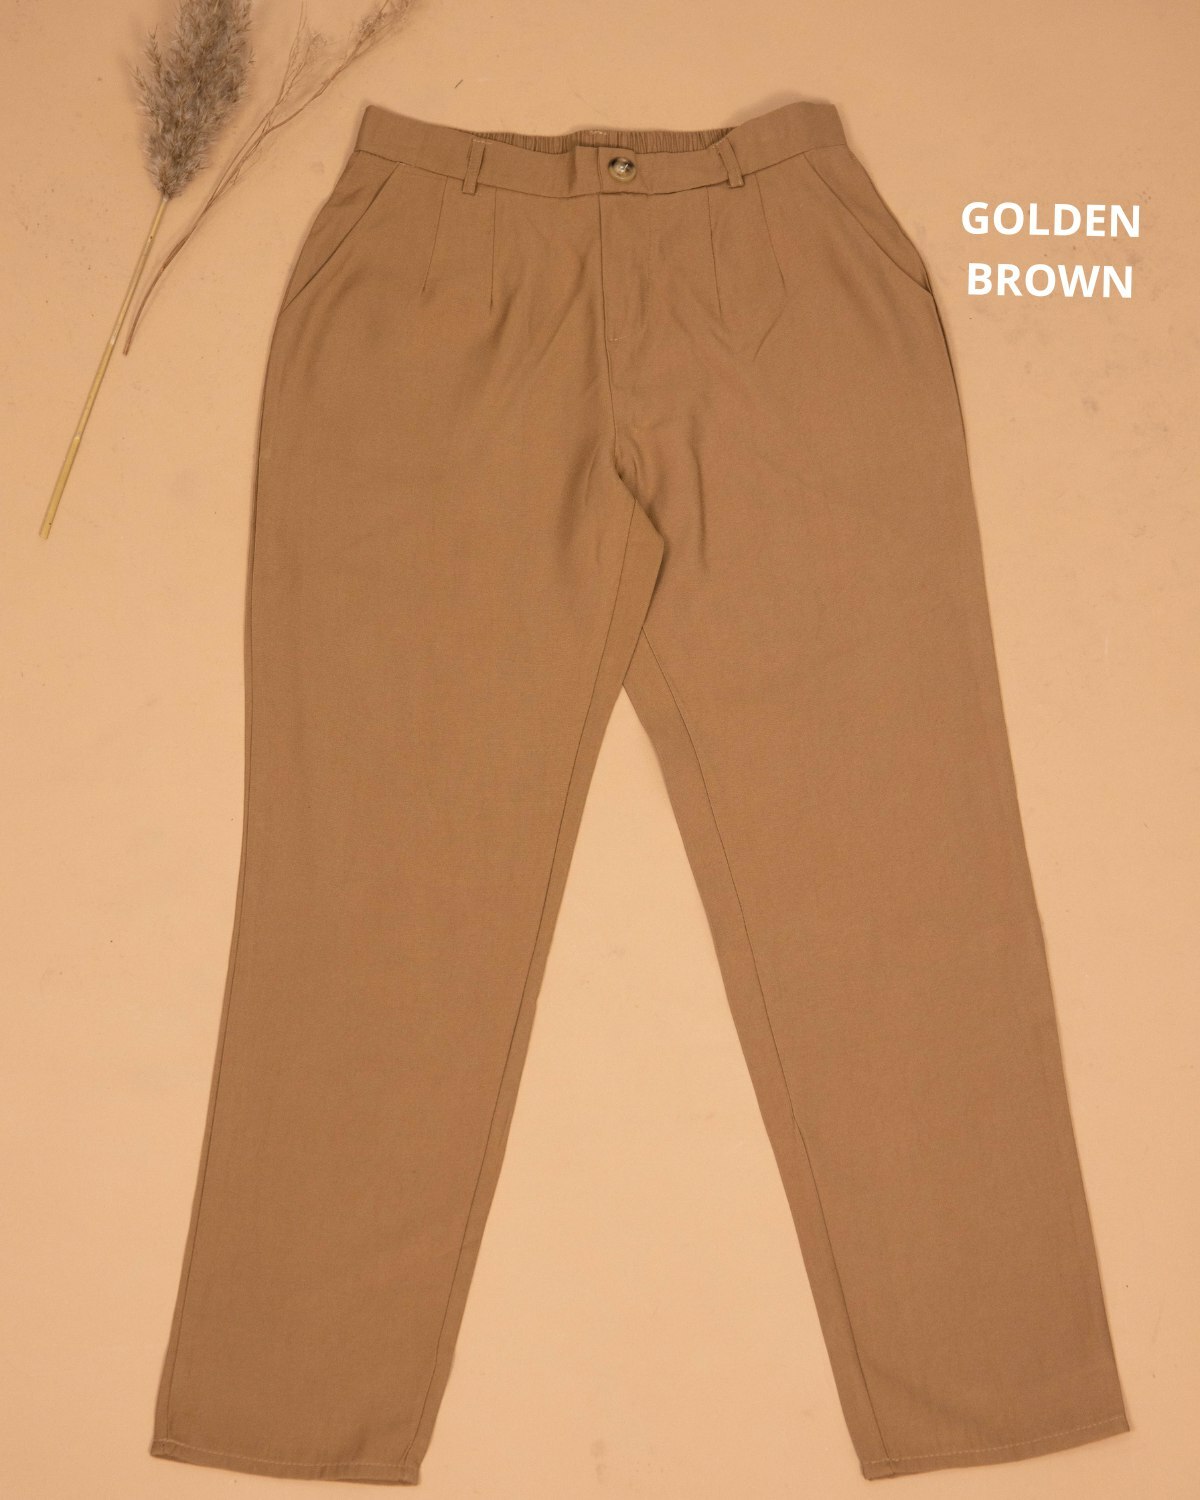 haura-wear-neeta-slim-straight-cotton-long-pants-seluar-muslimah-seluar-perempuan-palazzo-pants-sluar (9).jpg